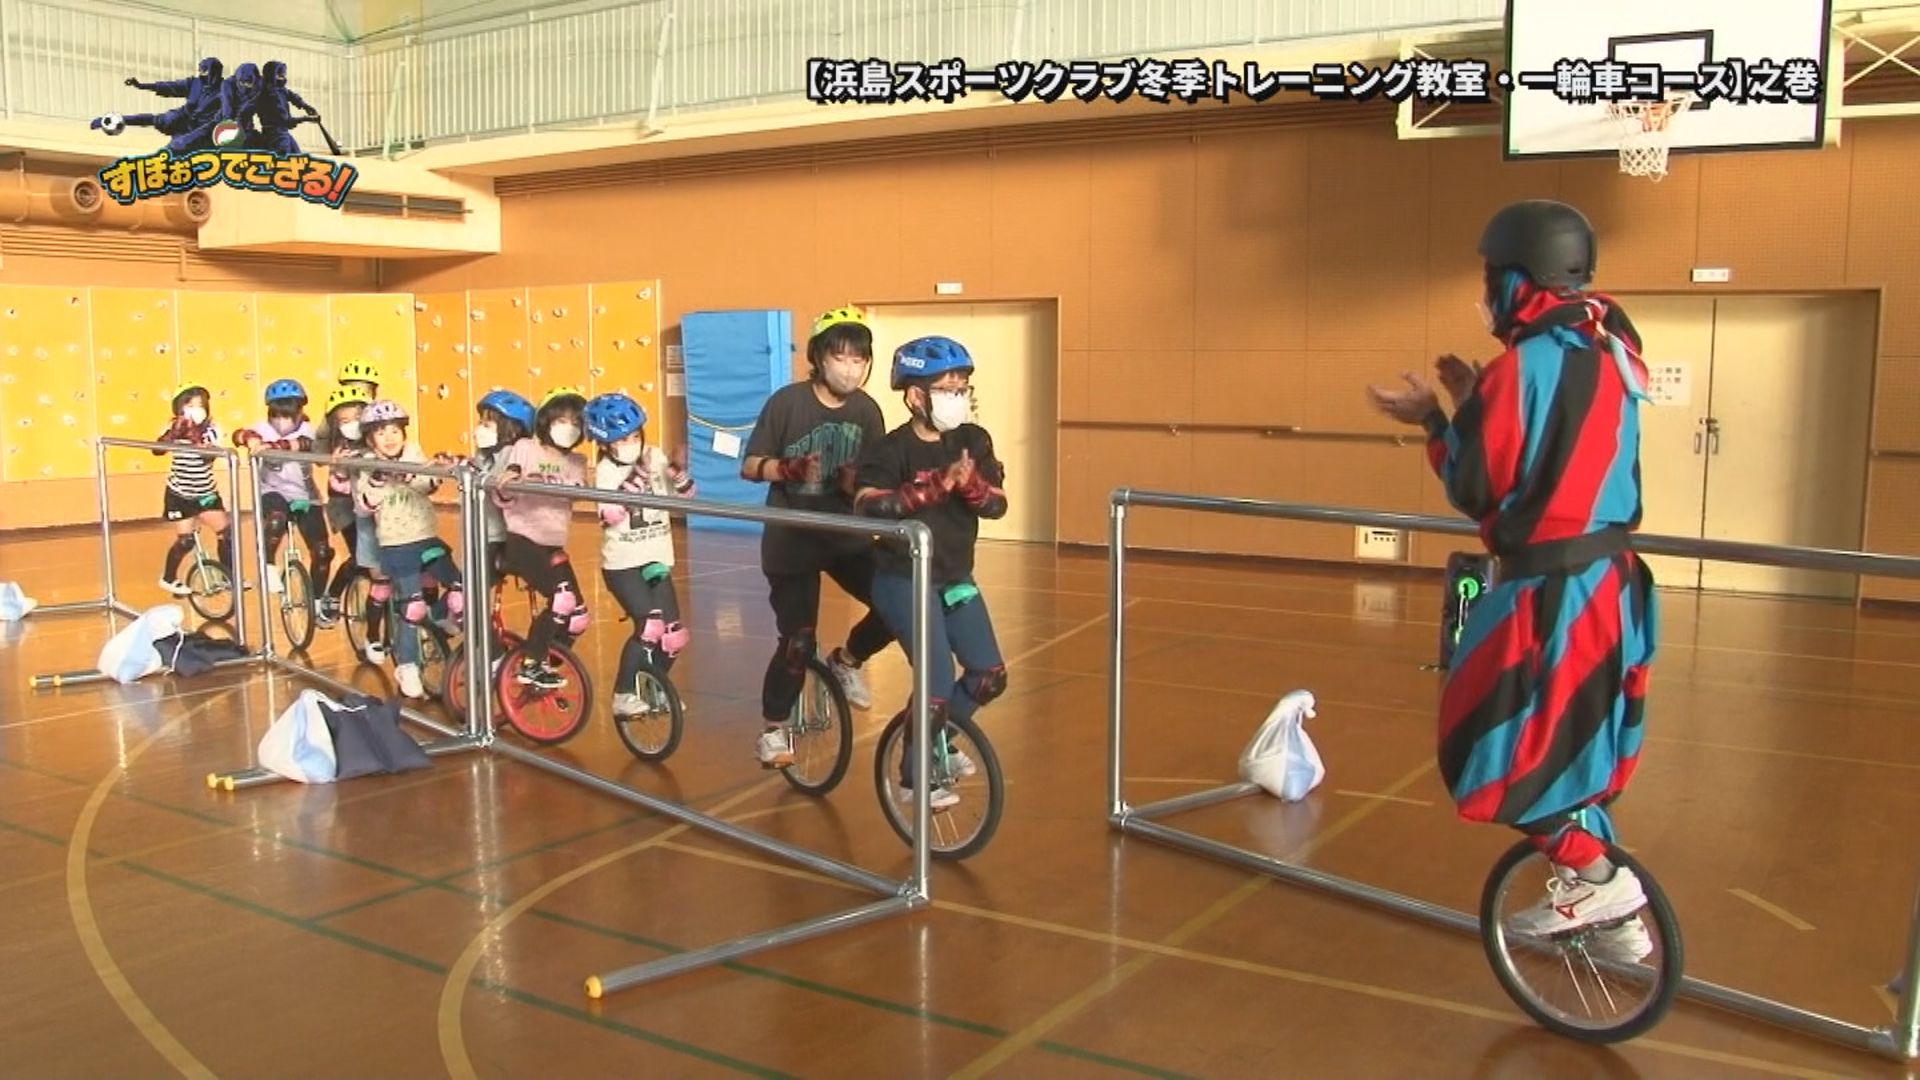 浜島スポーツクラブ 冬季トレーニング教室 一輪車コースの様子